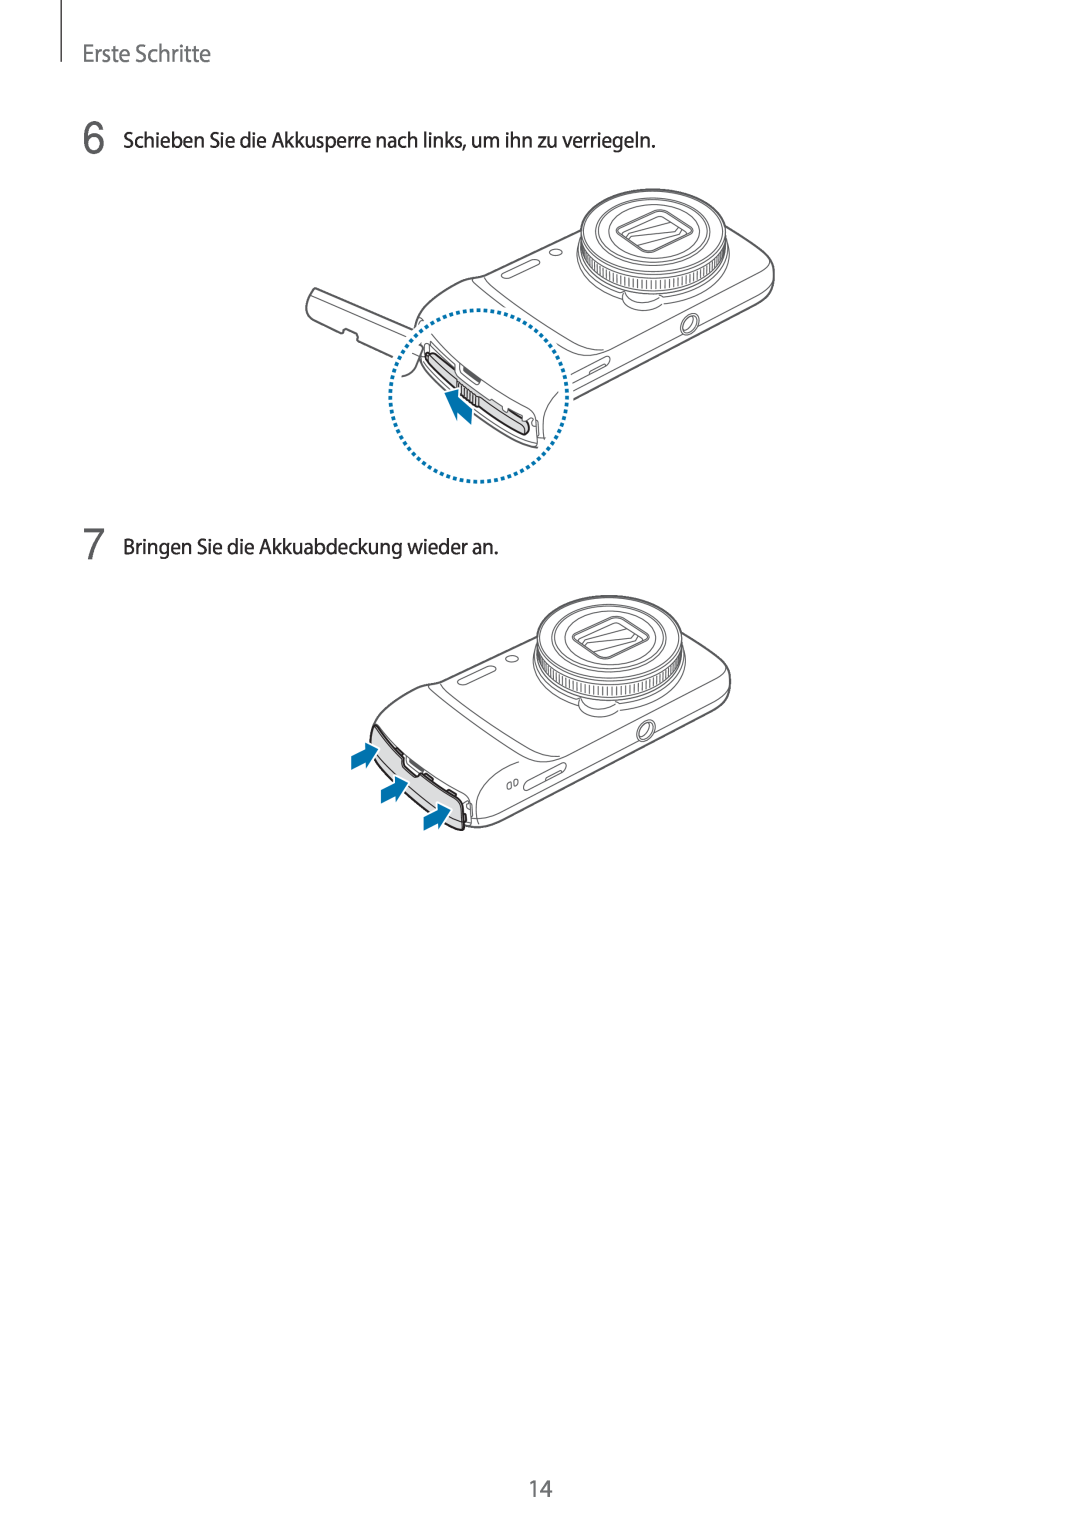 Samsung SM-C1010ZKATUR, SM-C1010ZWAEUR manual Erste Schritte, Schieben Sie die Akkusperre nach links, um ihn zu verriegeln 